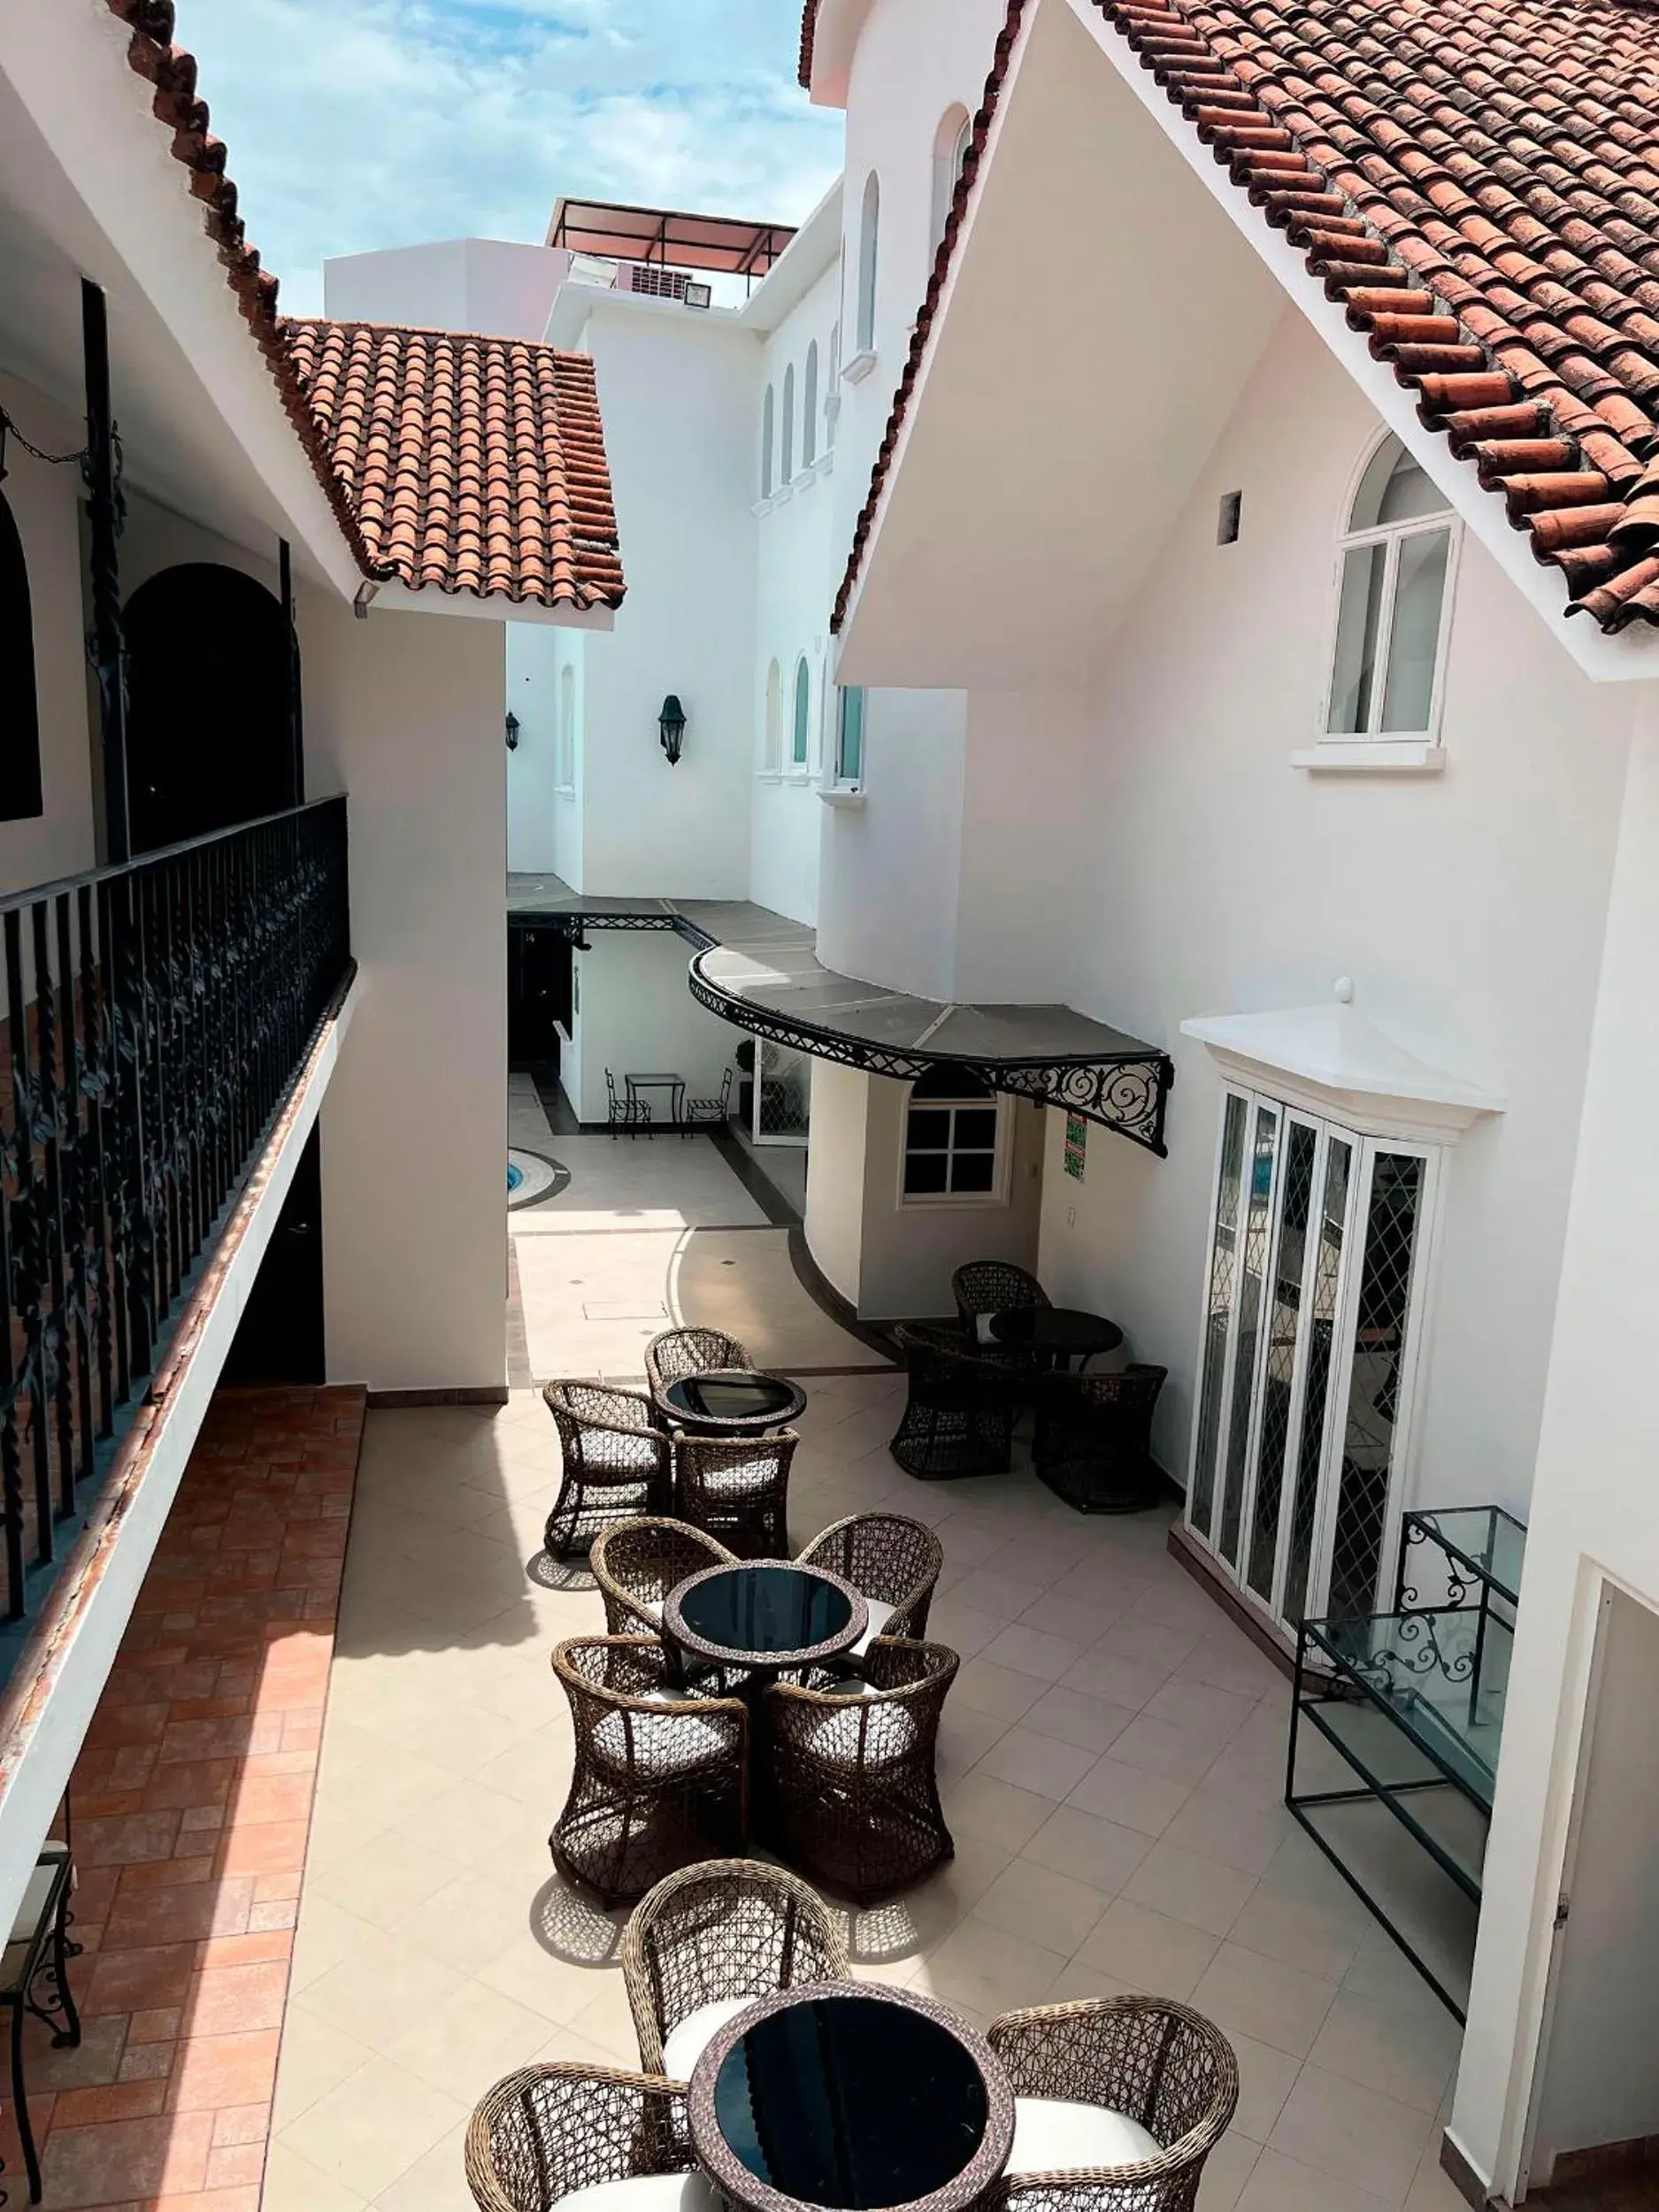 Property building, Balcony/Terrace in Casa Bonita Hotel Boutique & Spa